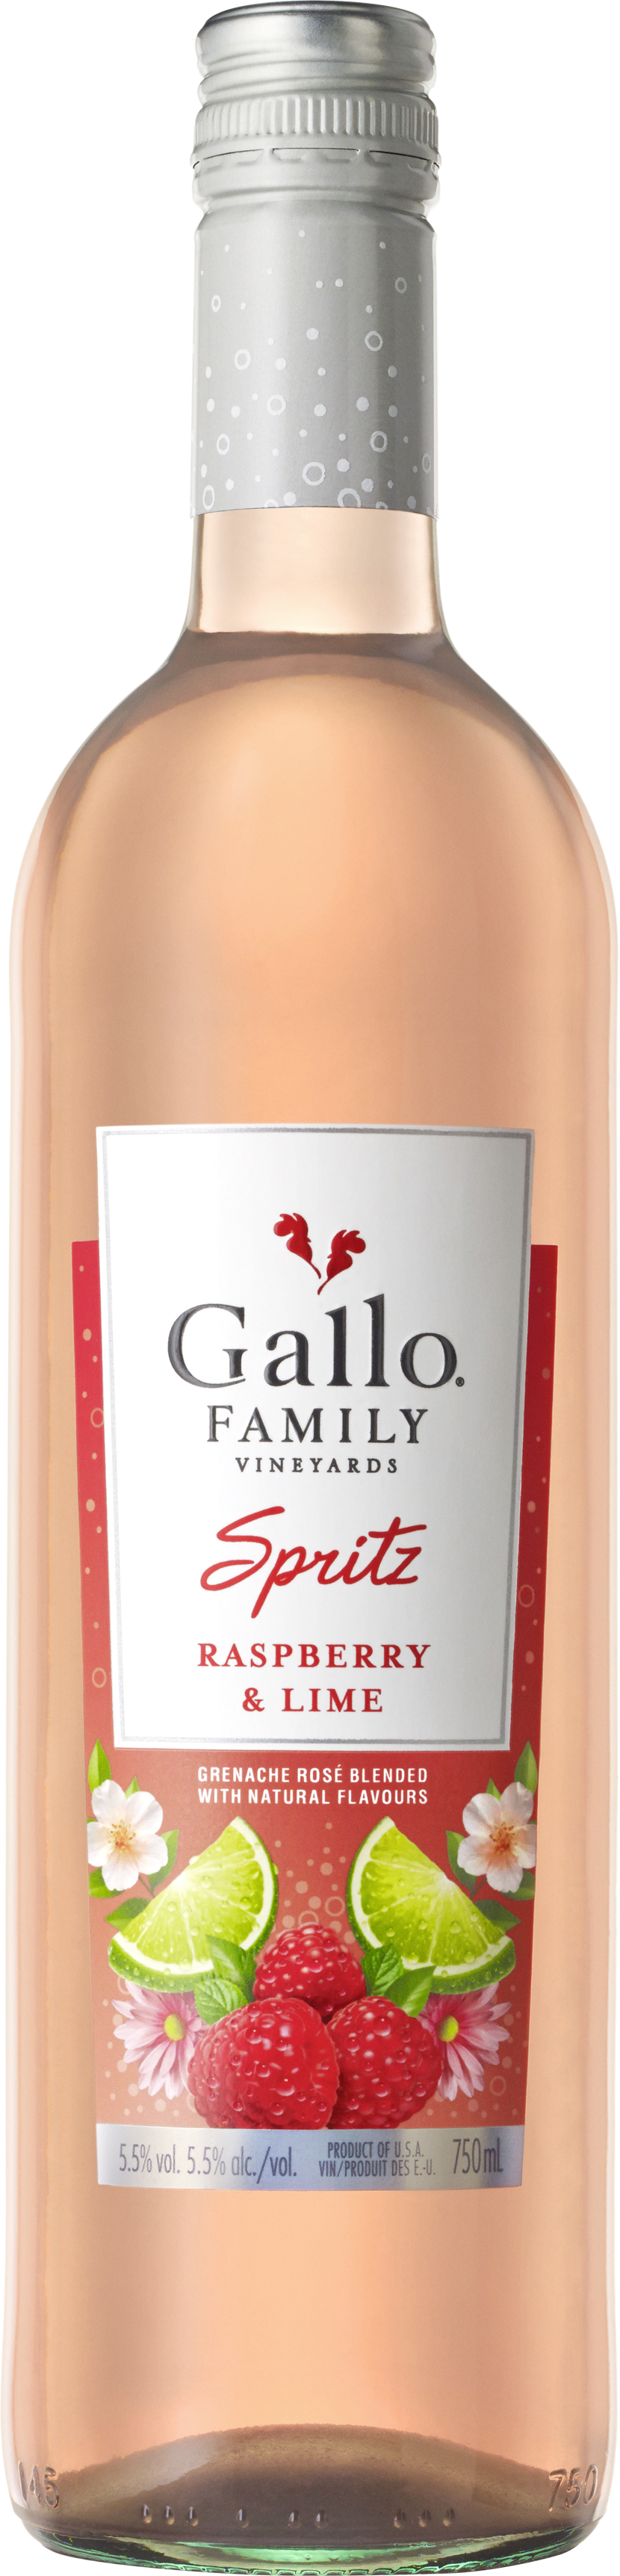 Gallo Family Spritz Himbeere Limette 5,5% vol. 0,75L